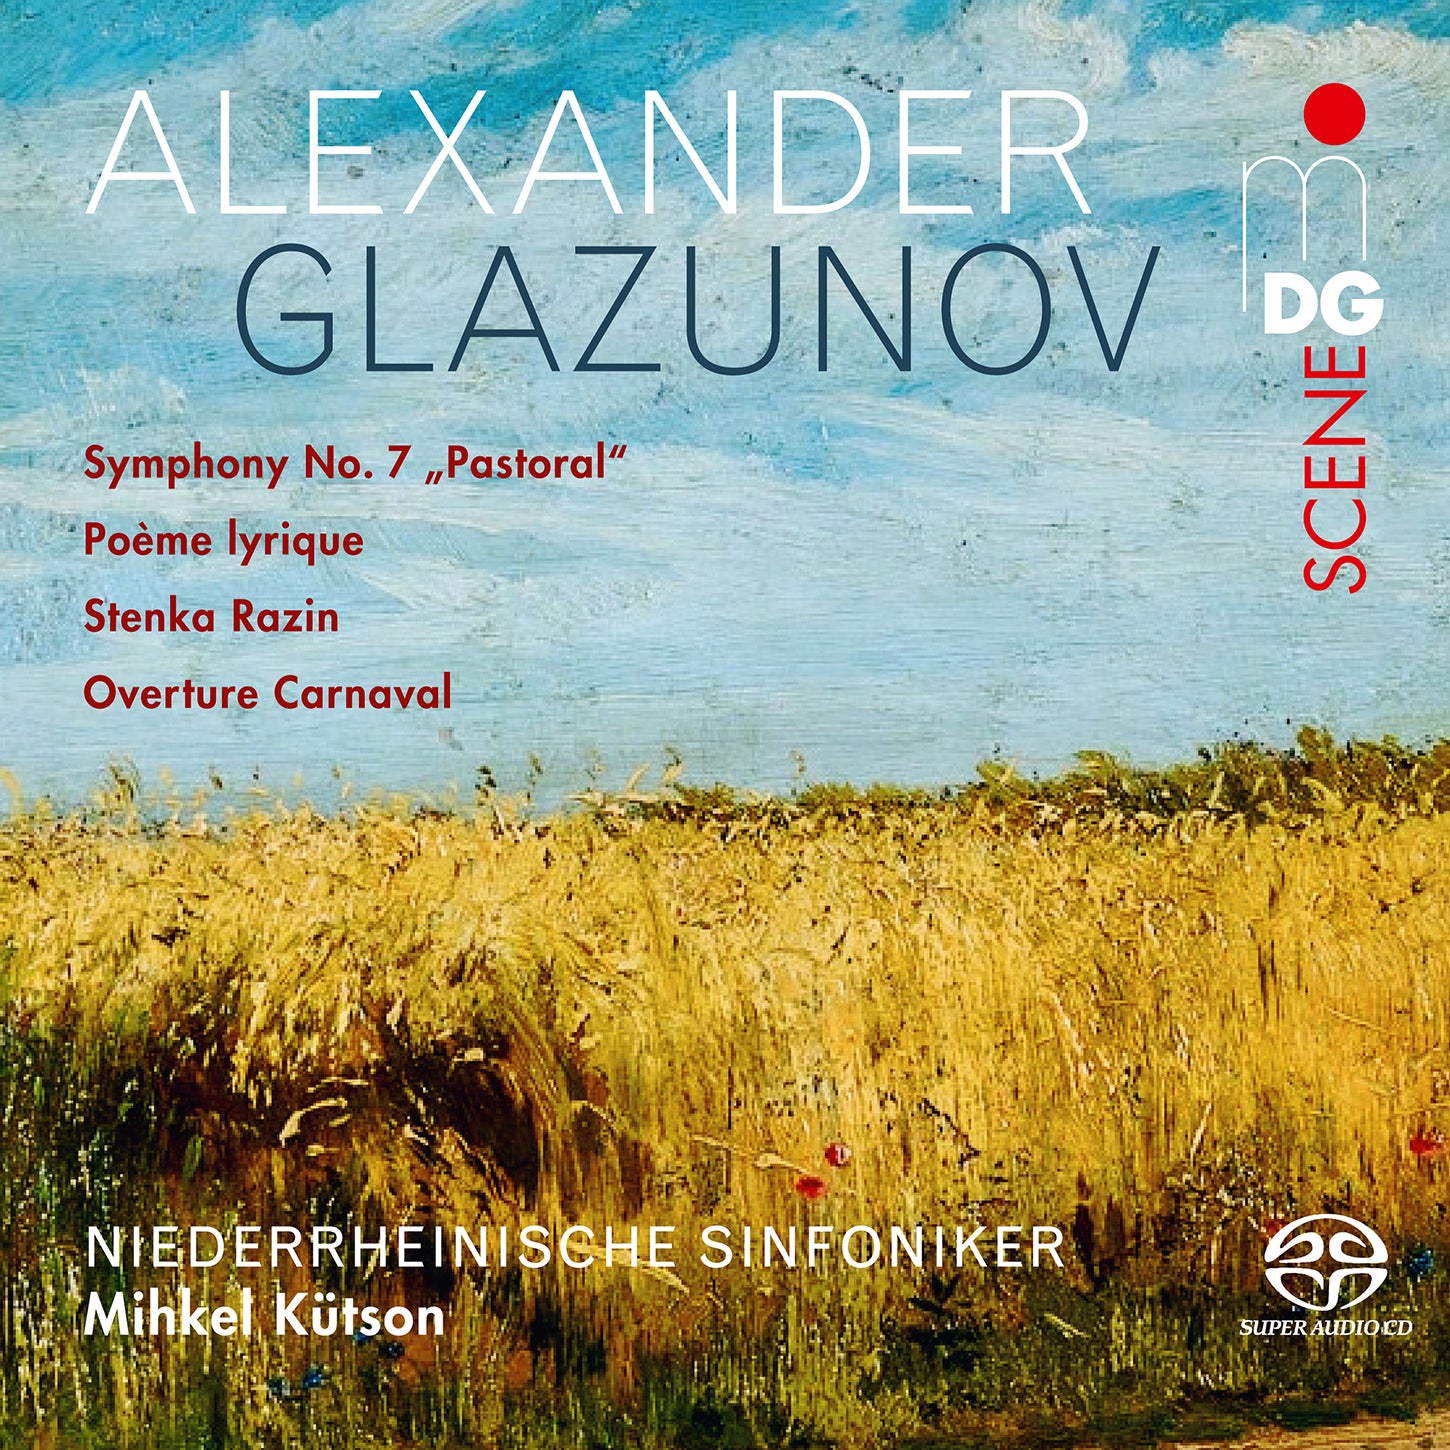 Glazunov: Symphony No. 7 "Pastoral", Poeme lyrique, Stenka Razin, Overture Carnaval / Kütson, Niederrheinische Sinfoniker